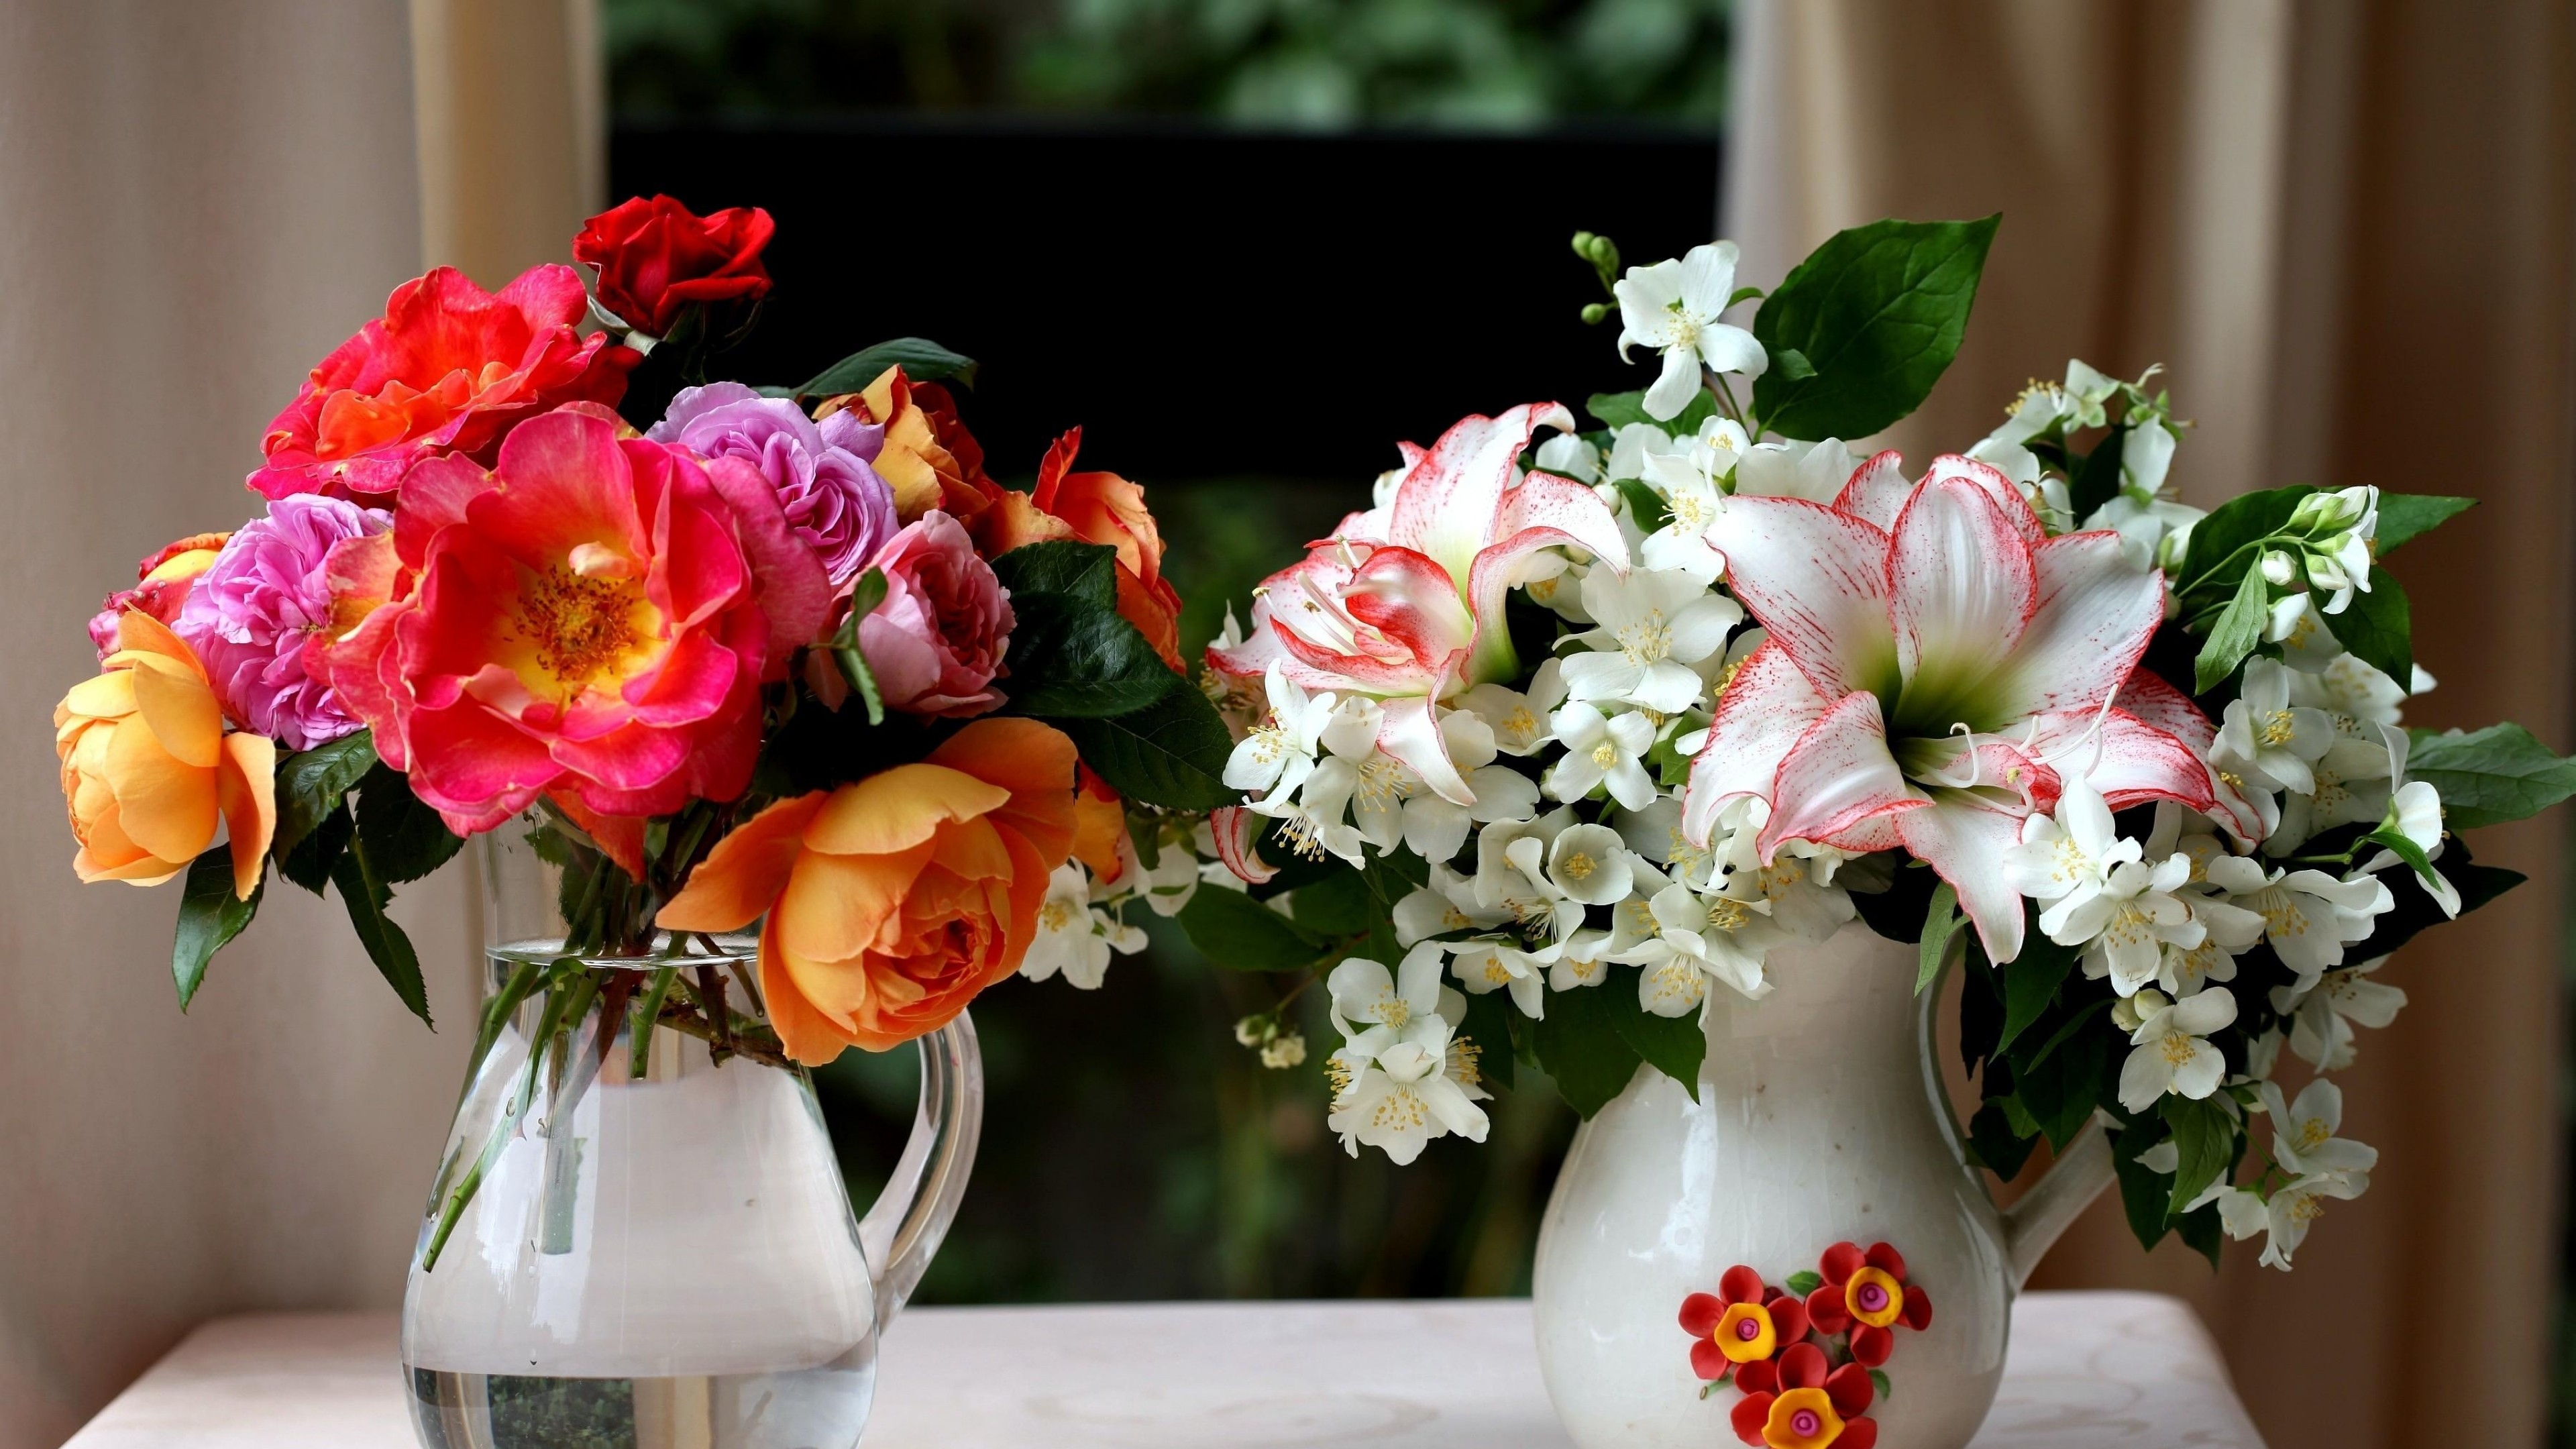 Много цветов на столе. Цветы в вазе. Букеты в вазах. Цветы в прозрачной вазе.